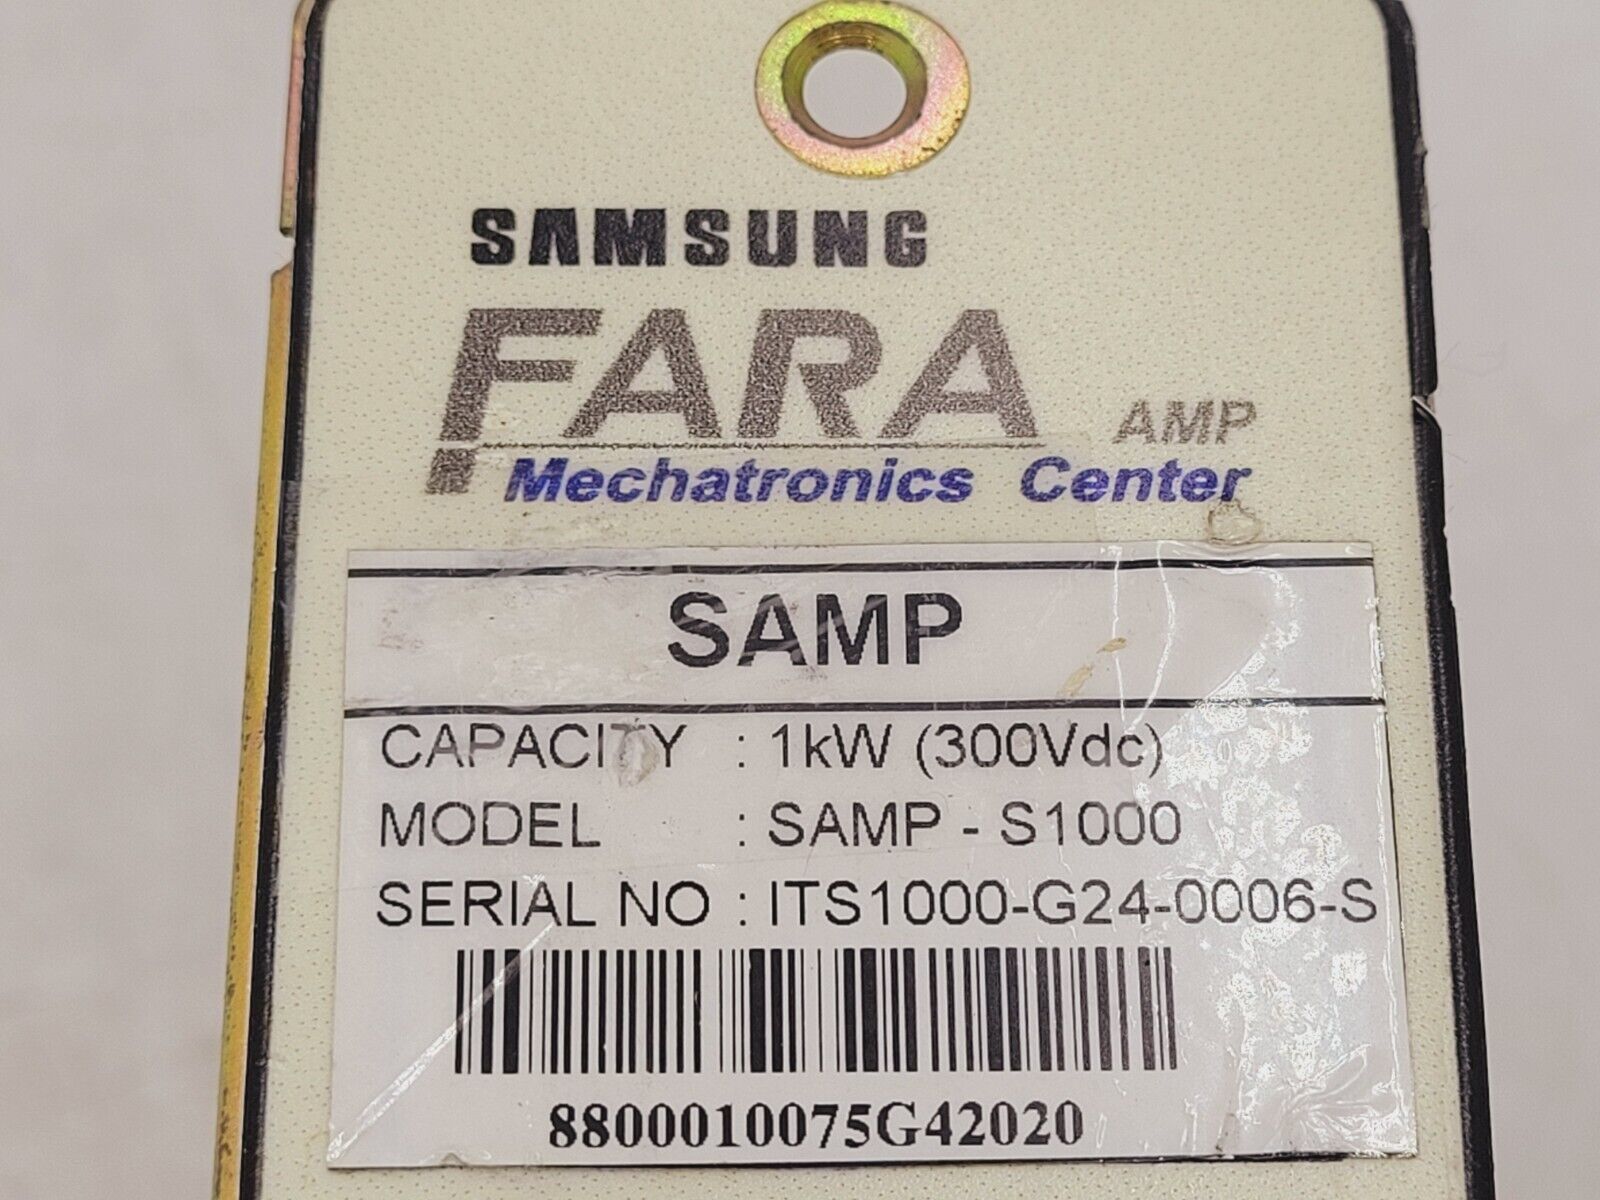 SAMSUNG FARA SAMP-S1000 Used